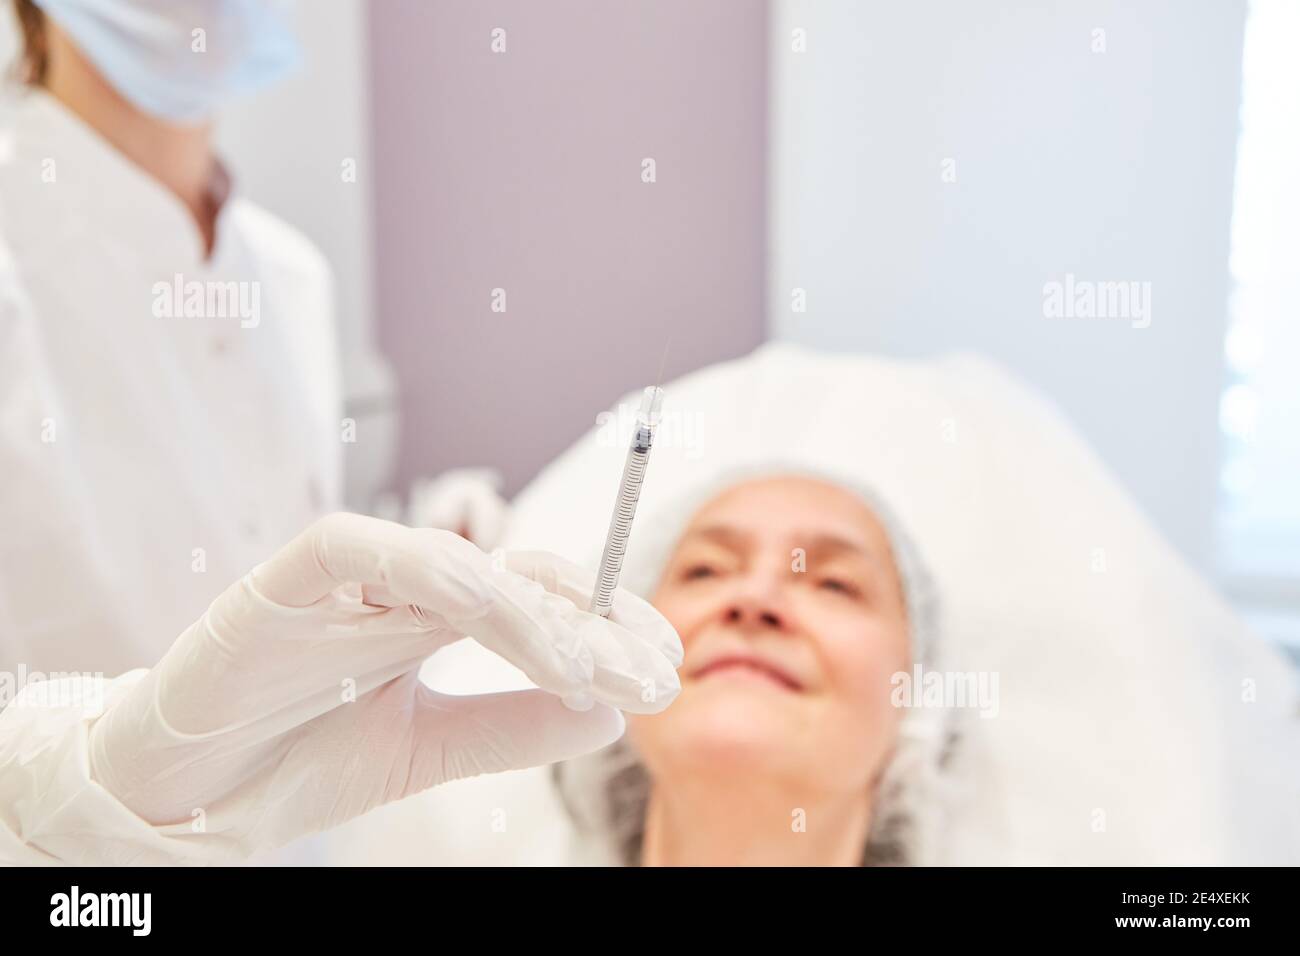 Ärztin hält Spritze mit Hyaluronsäure zur Faltenreduktion In der Schönheitsklinik Stockfoto